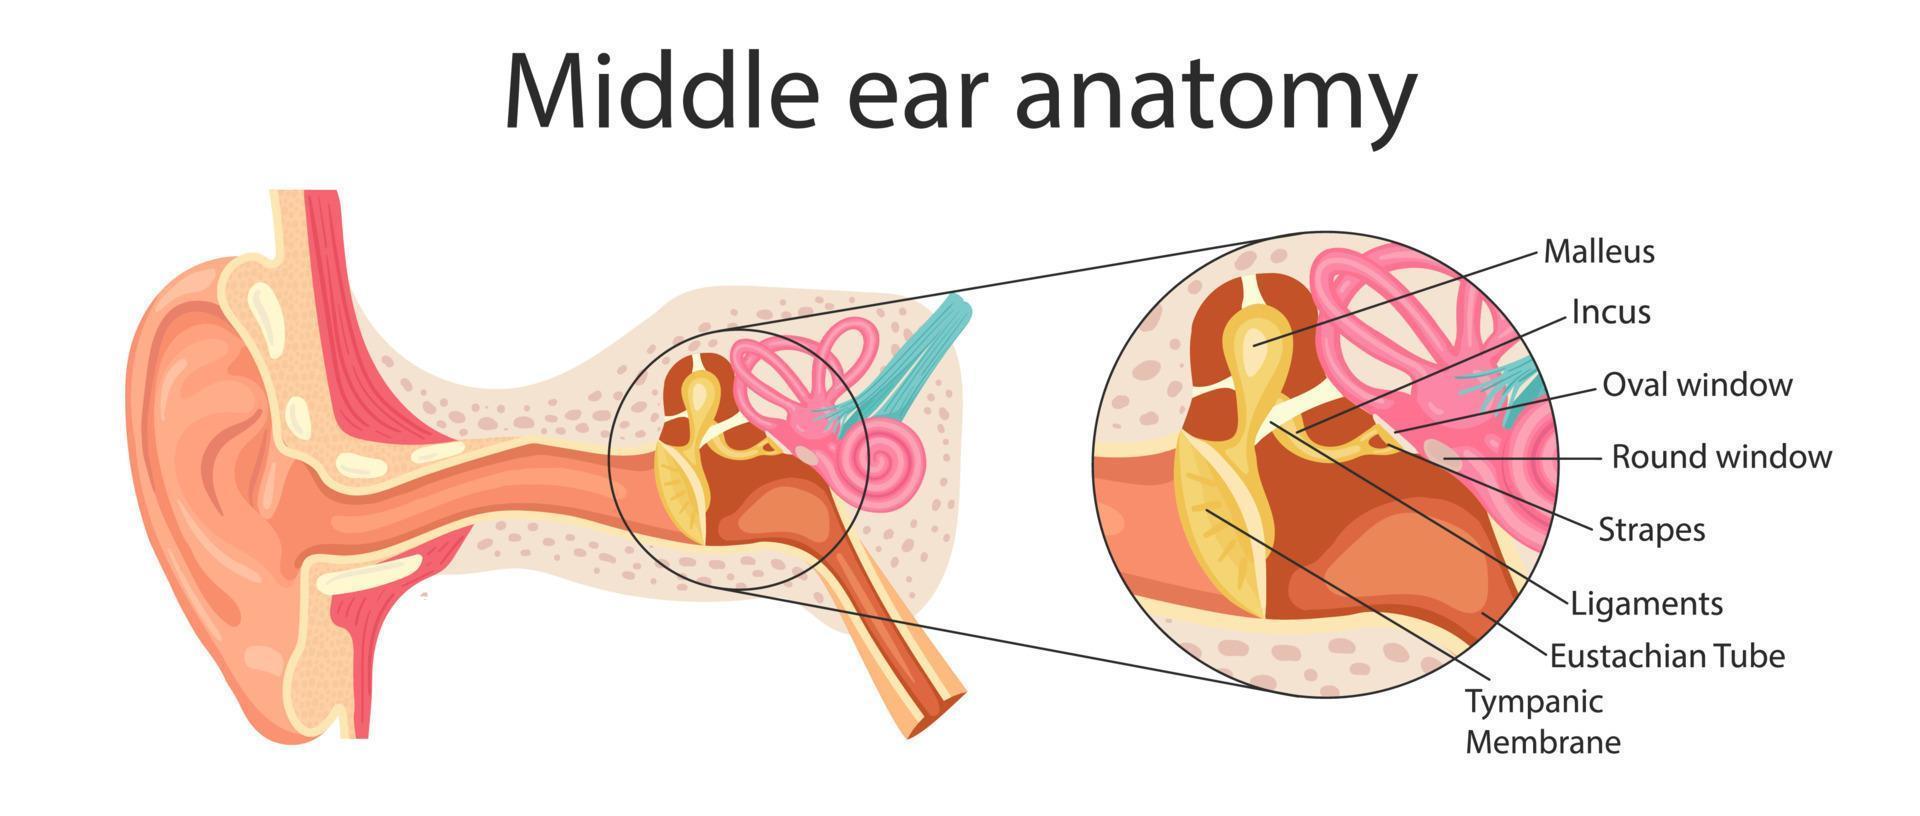 Anatomía del oído medio. ilustración detallada para fines educativos, médicos, biológicos y científicos. vector